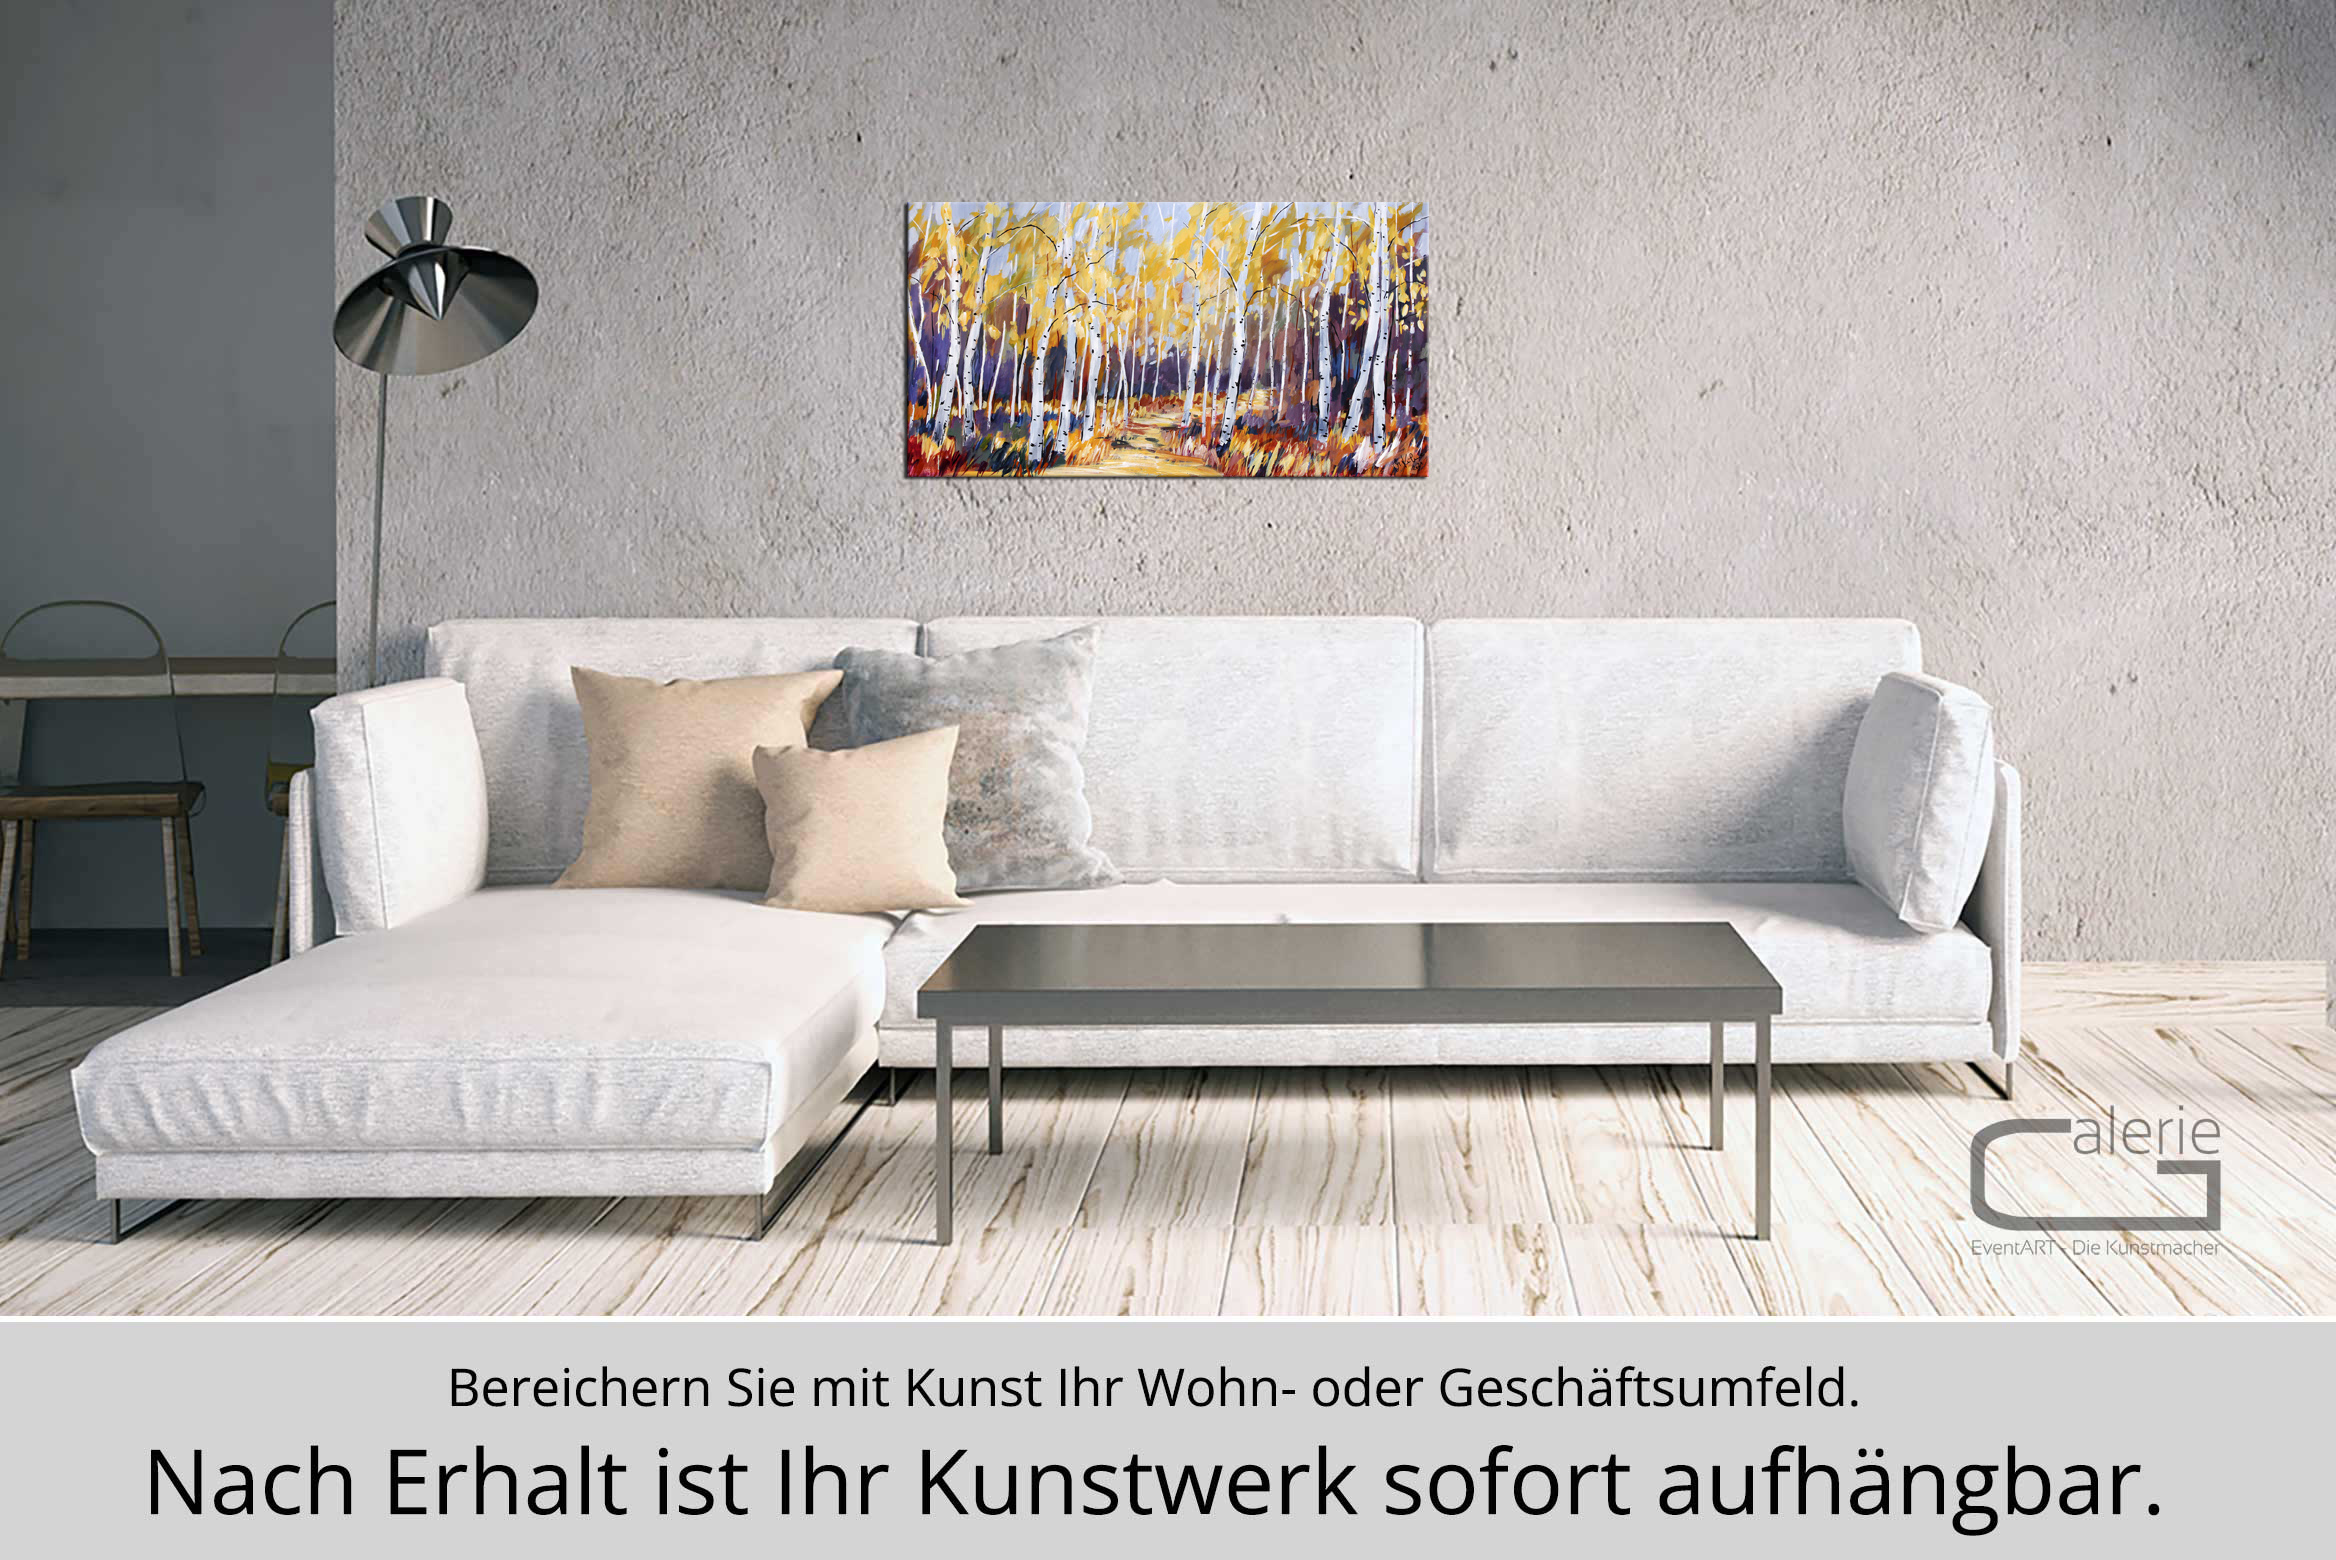 M. Kühne: "Herbstspaziergang", Edition, signierter Kunstdruck